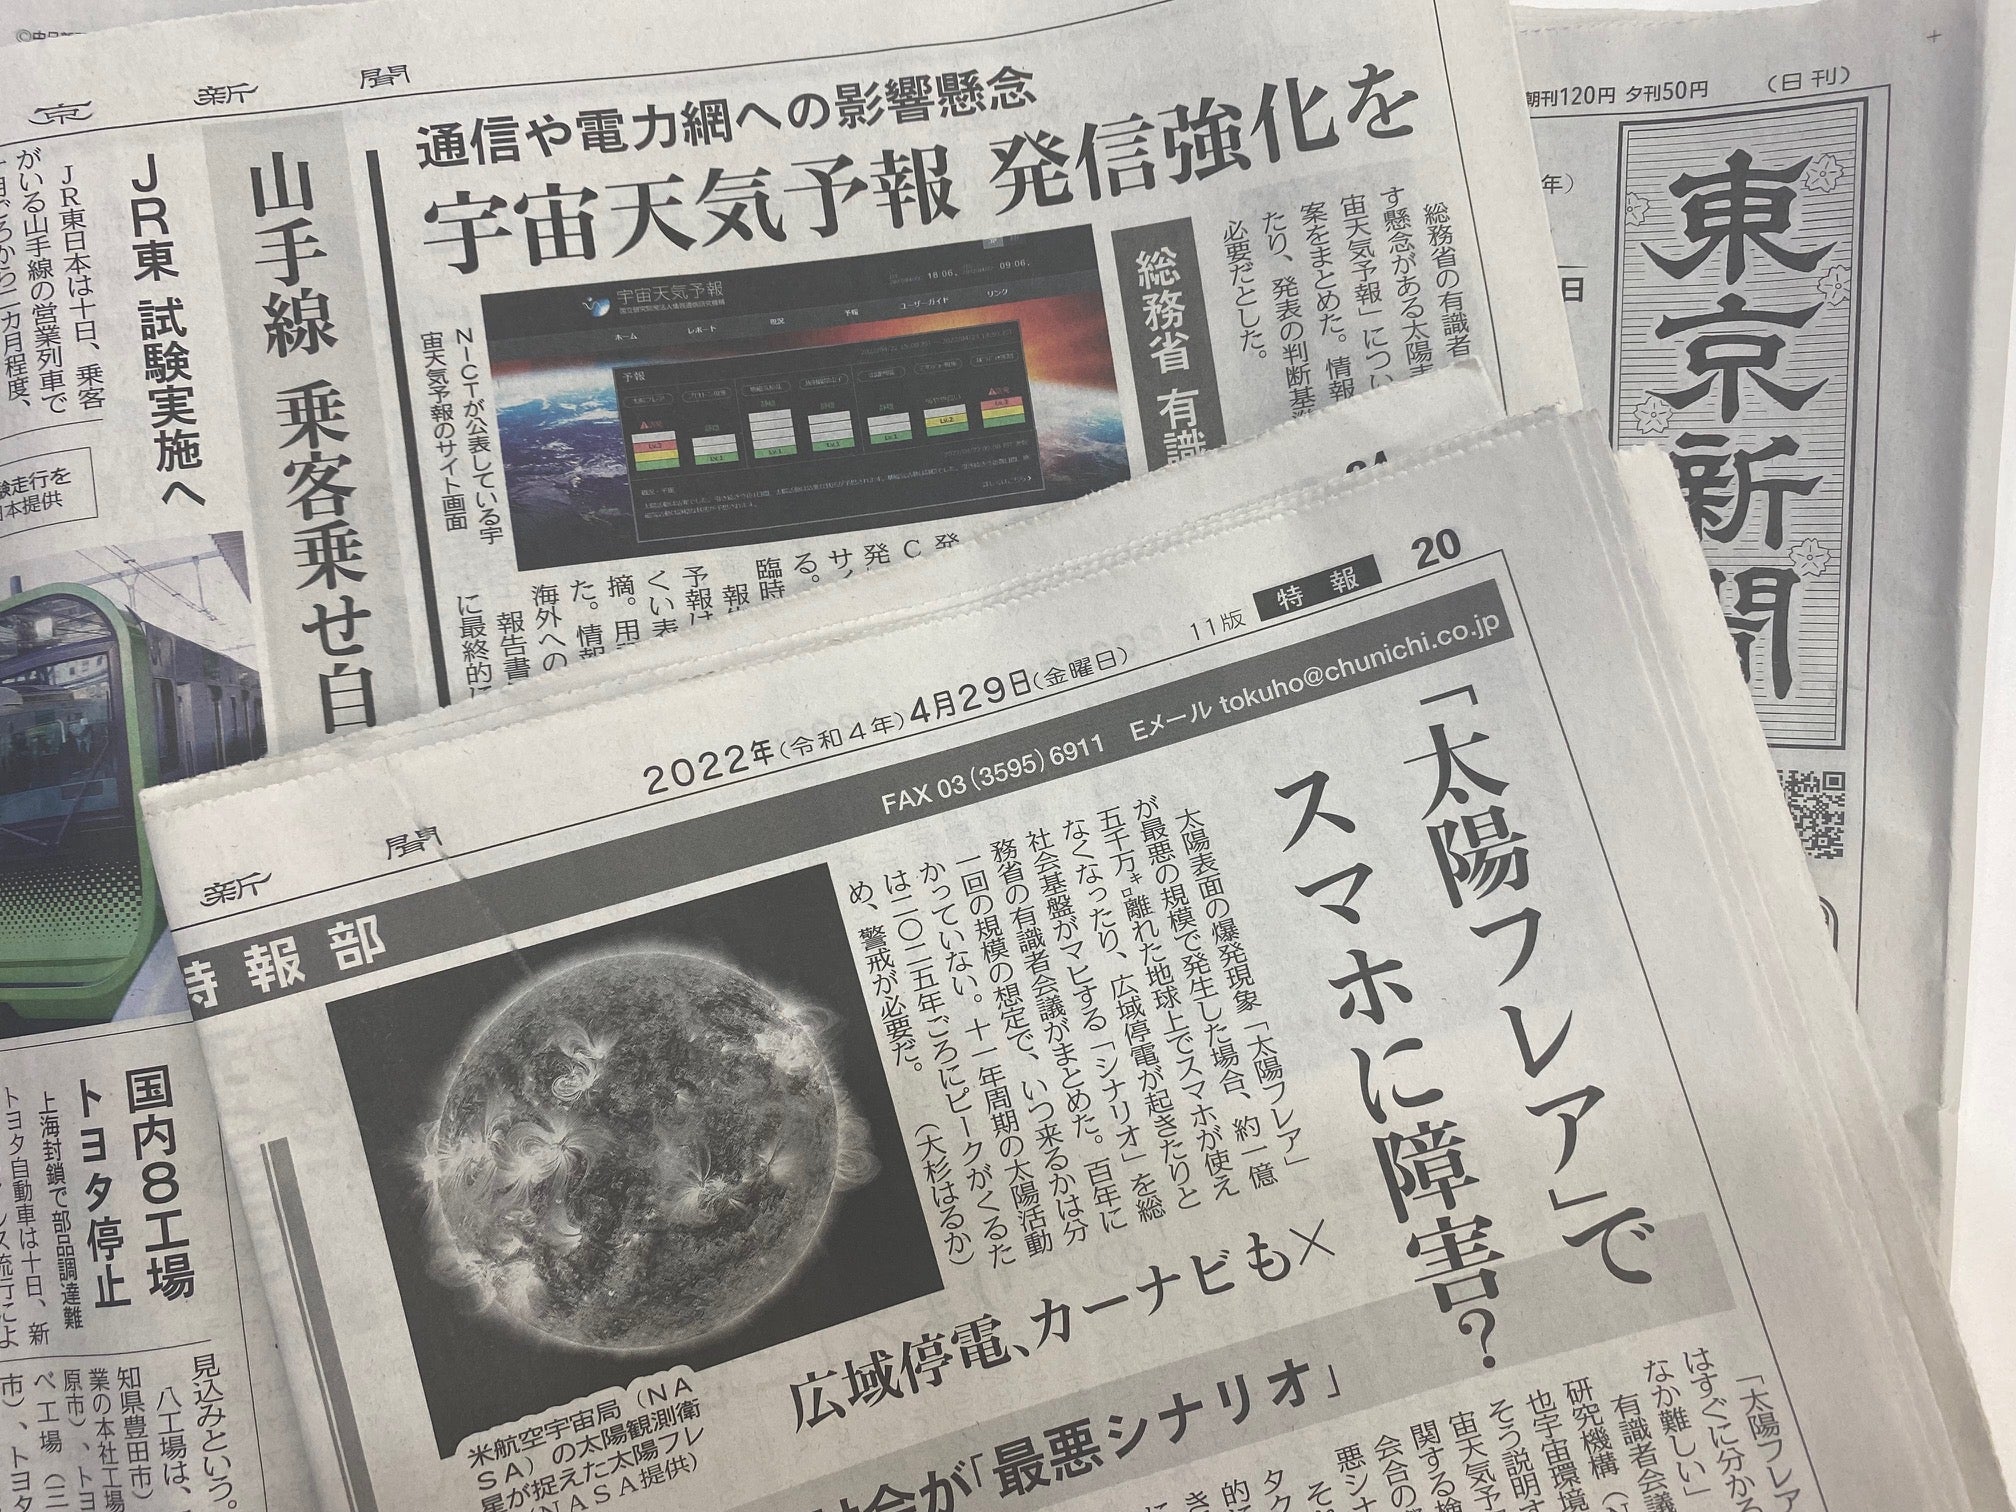 東京新聞紙面連動企画・こちら特報部「太陽フレア」でスマホに障害